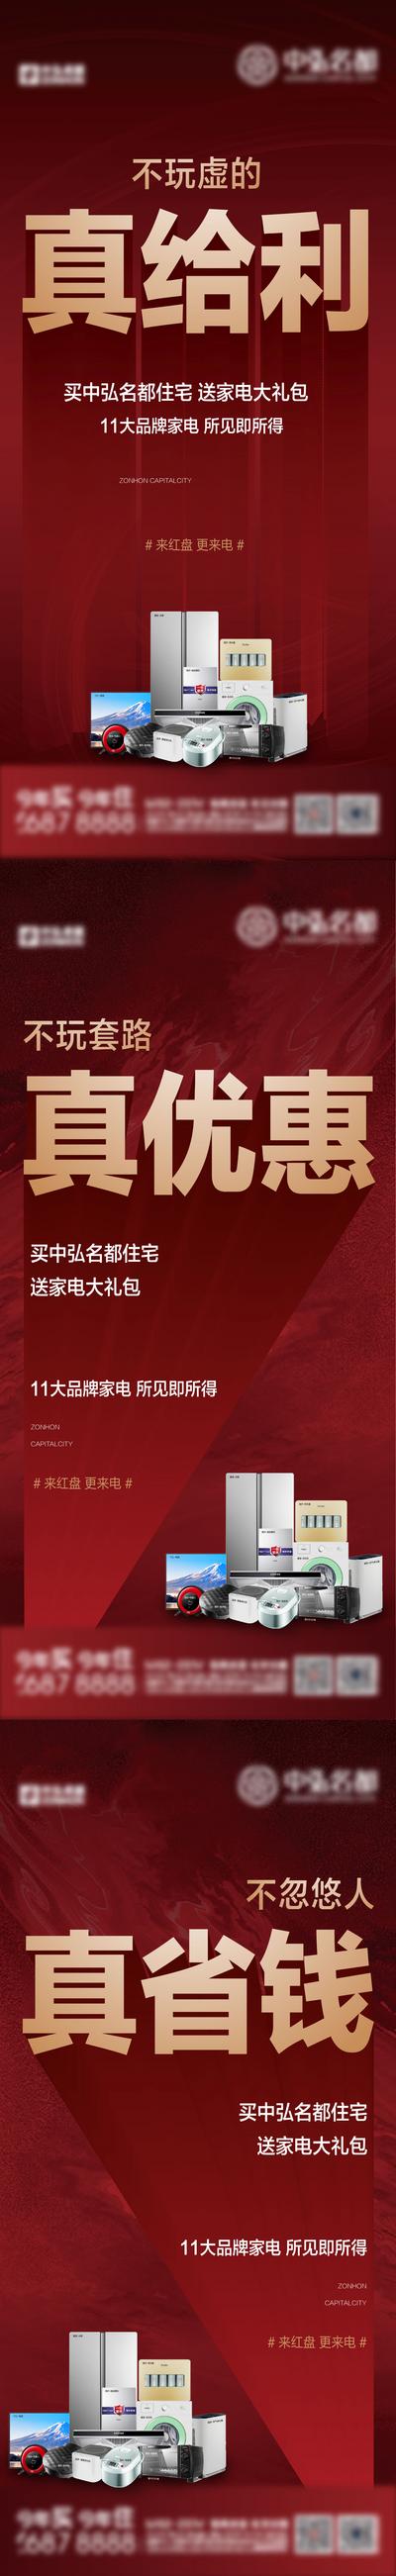 南门网 广告 海报 地产 家电 购房 福利 赠品 电器 系列 喜庆